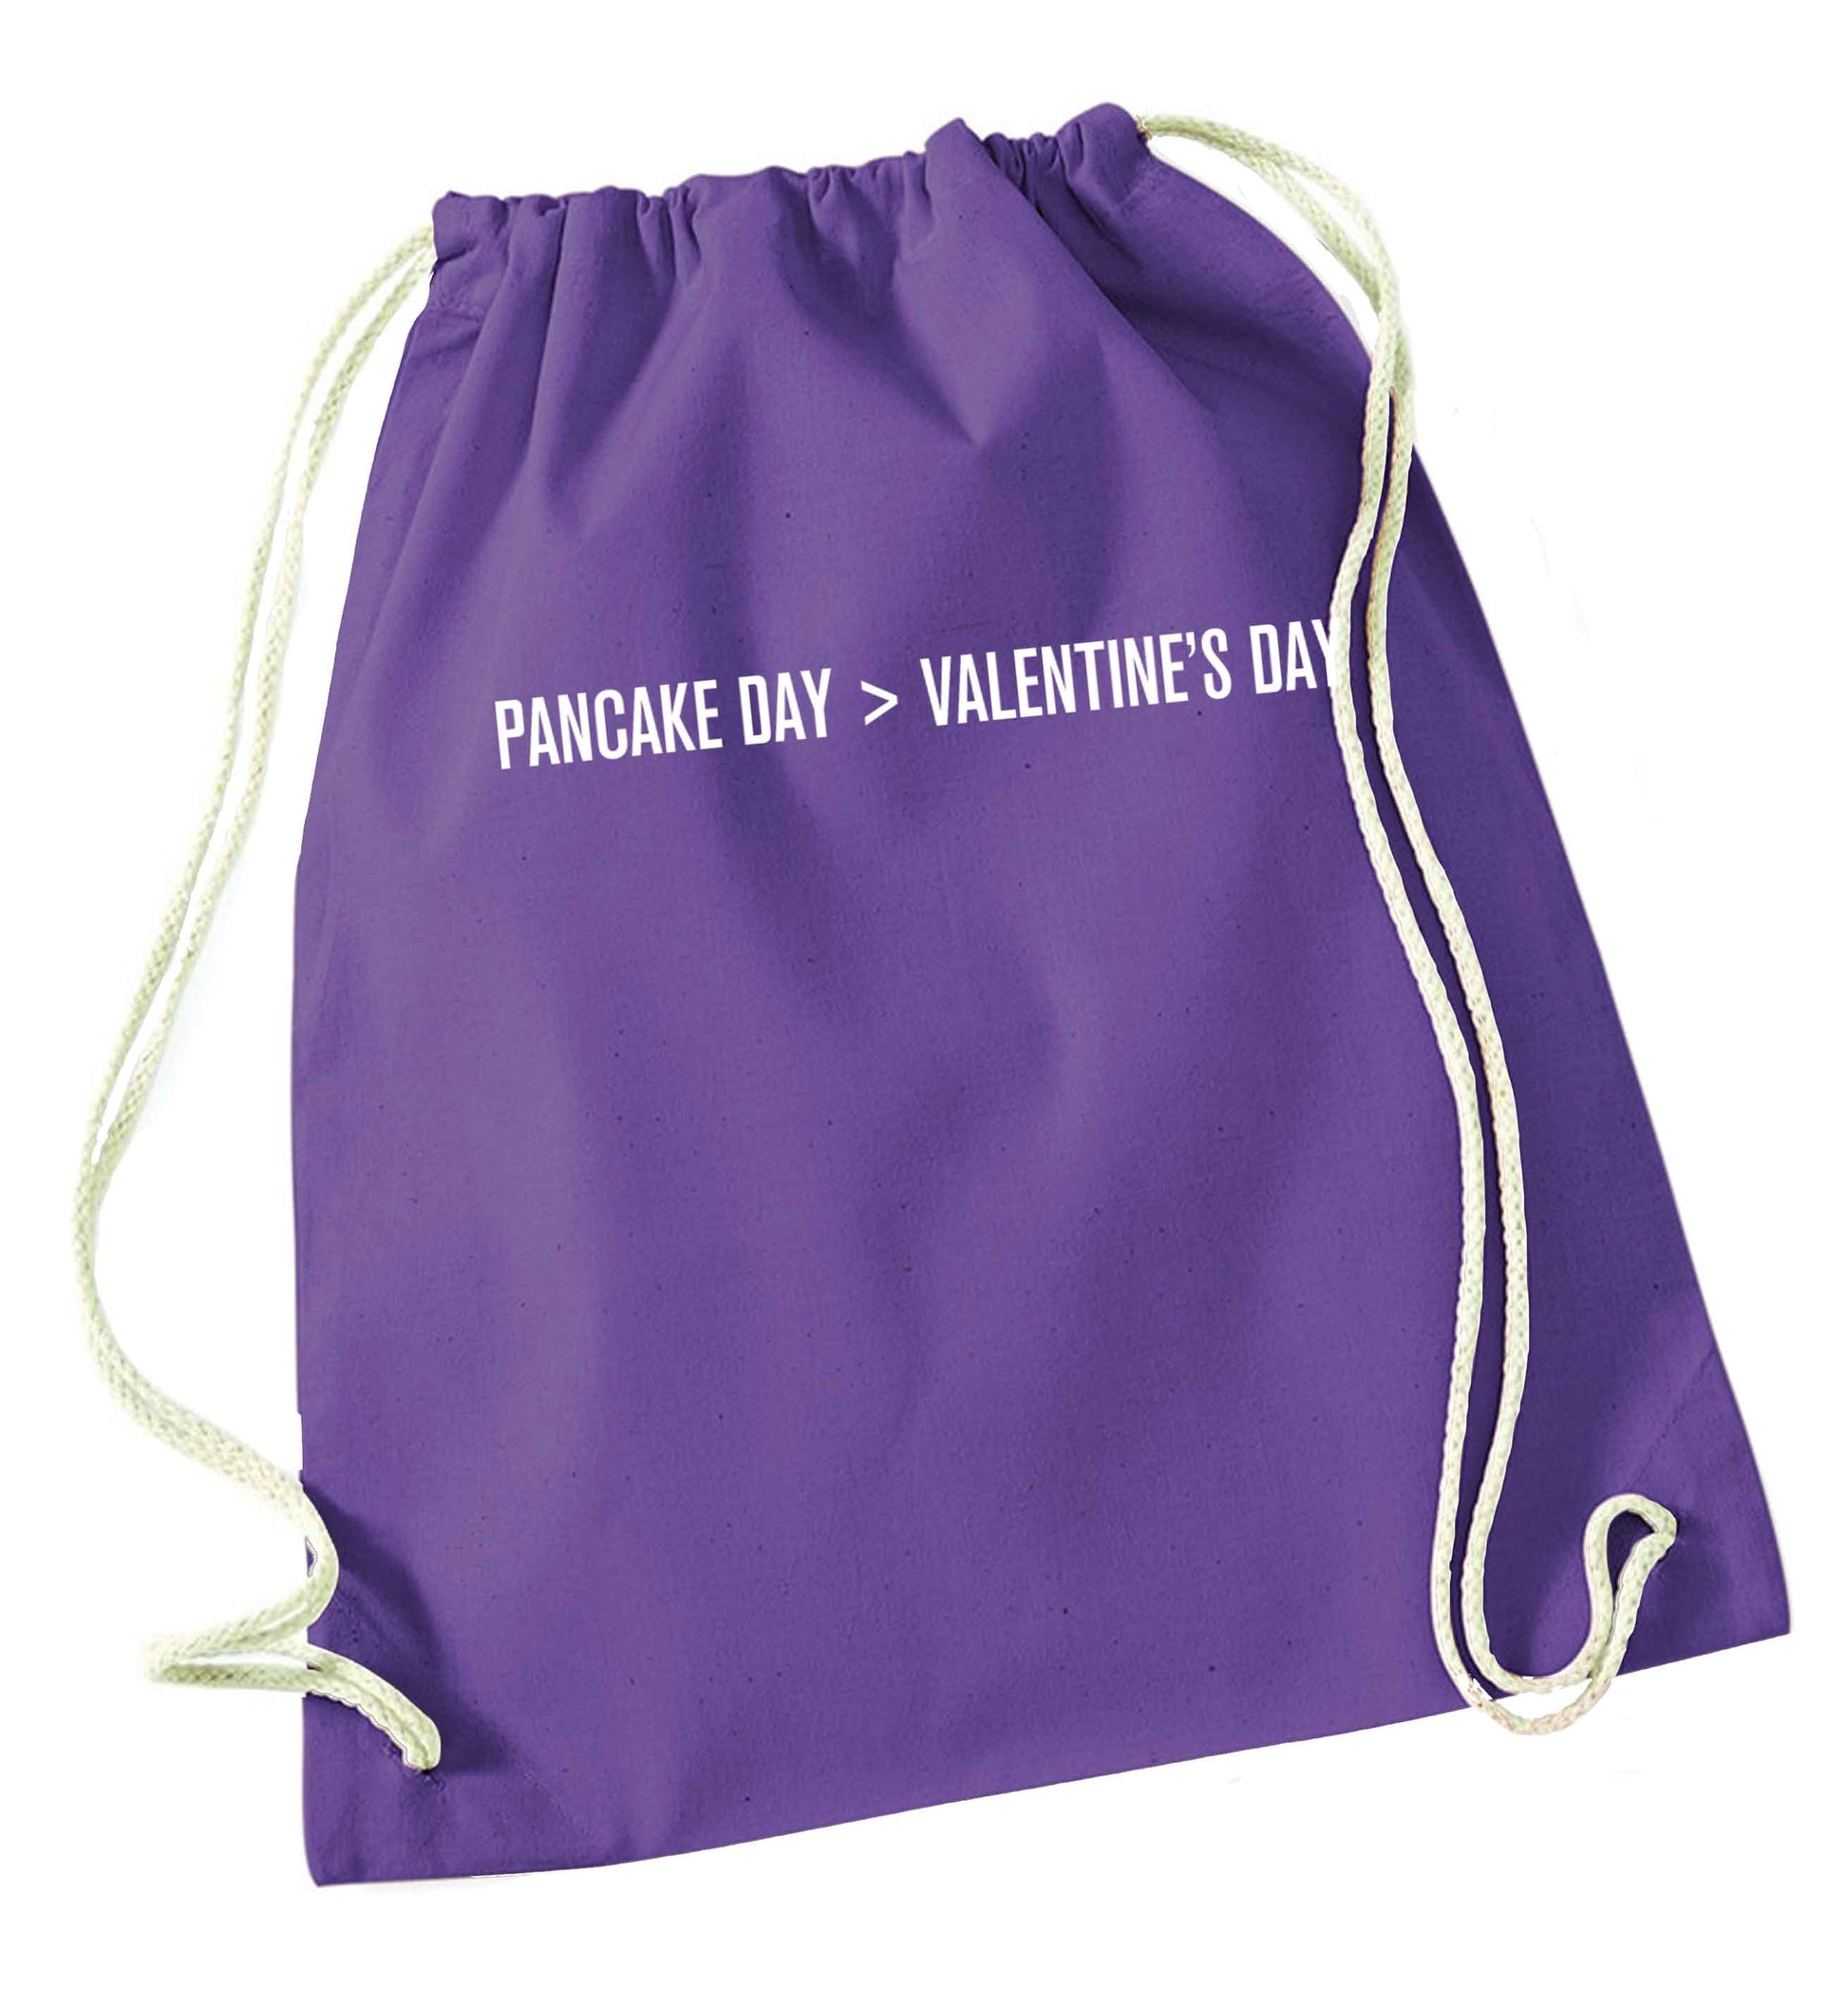 Pancake day > valentines day purple drawstring bag